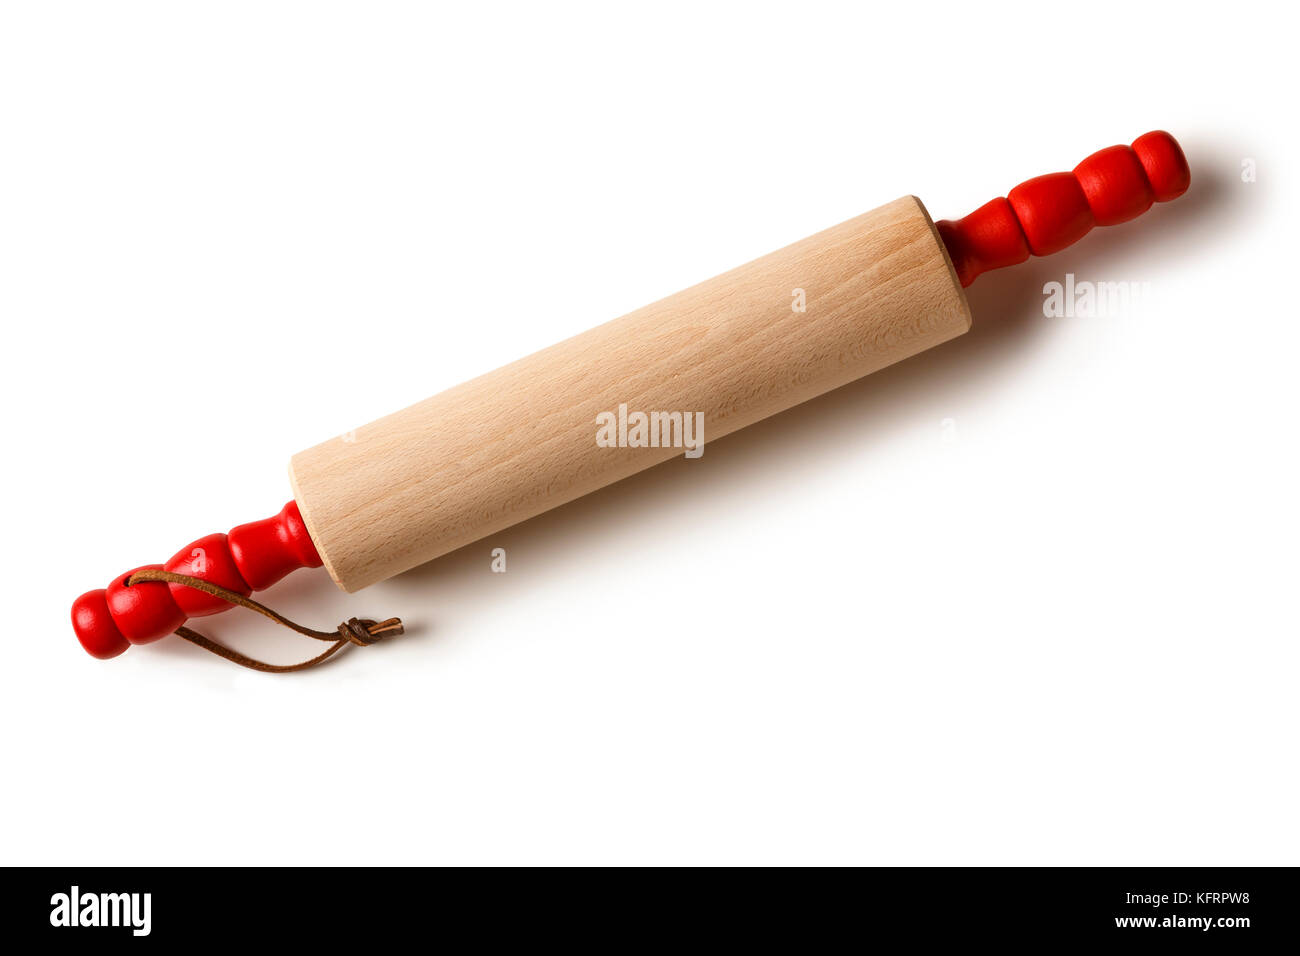 In legno classico matterello con maniglie rosse home utensili da forno isolato su sfondo bianco Foto Stock